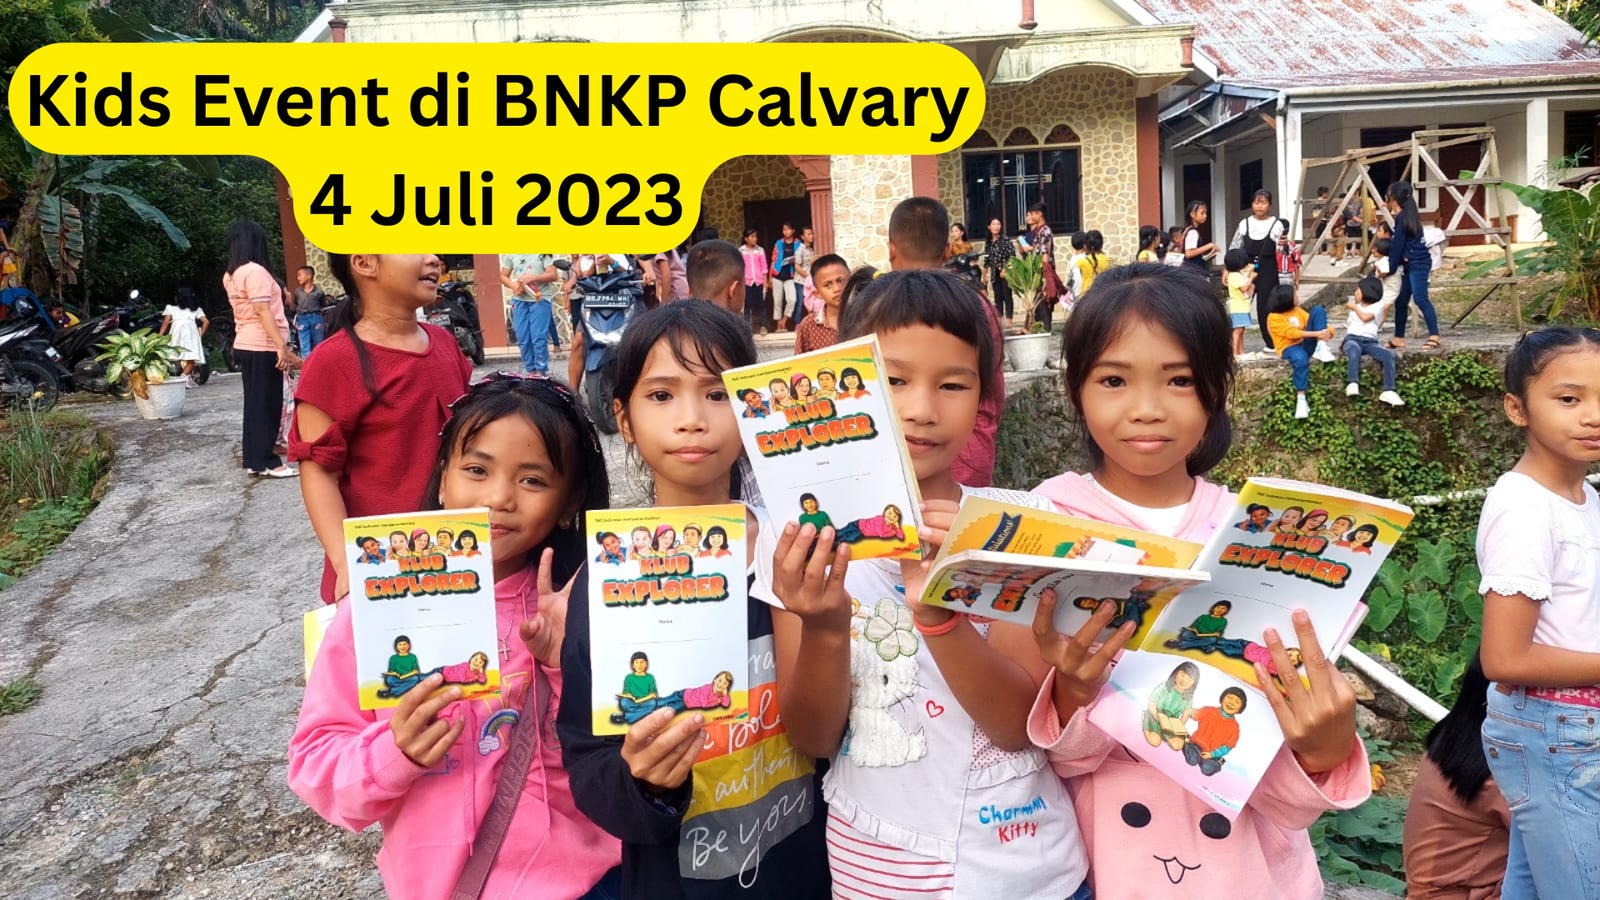 Kids Event di BNKP Calvary 4 Juli 2023